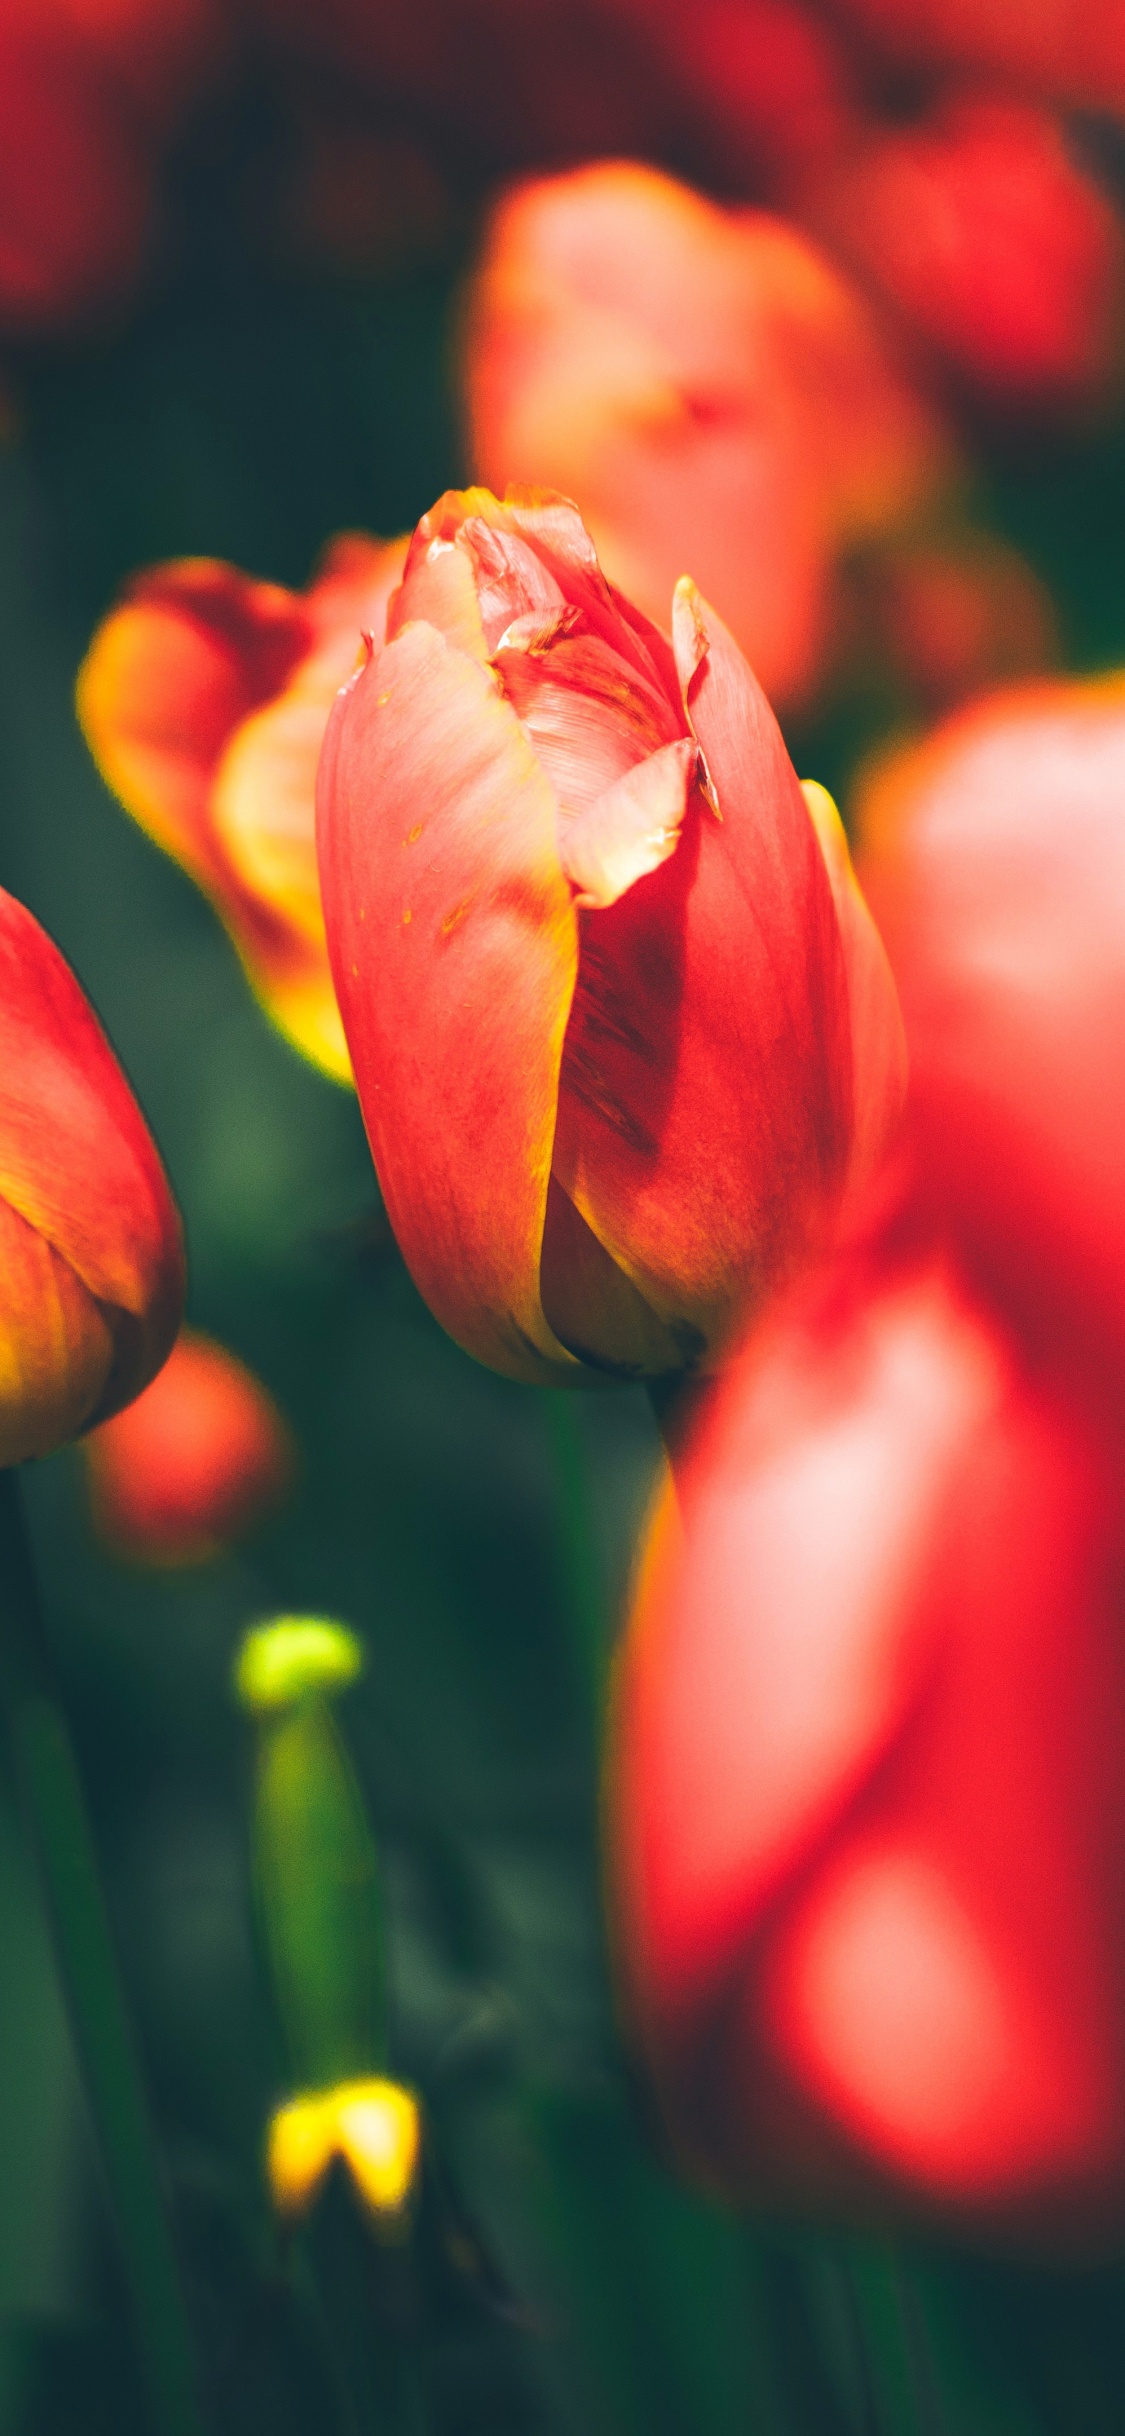 Tulipes Rouges en Fleurs Pendant la Journée. Wallpaper in 1125x2436 Resolution